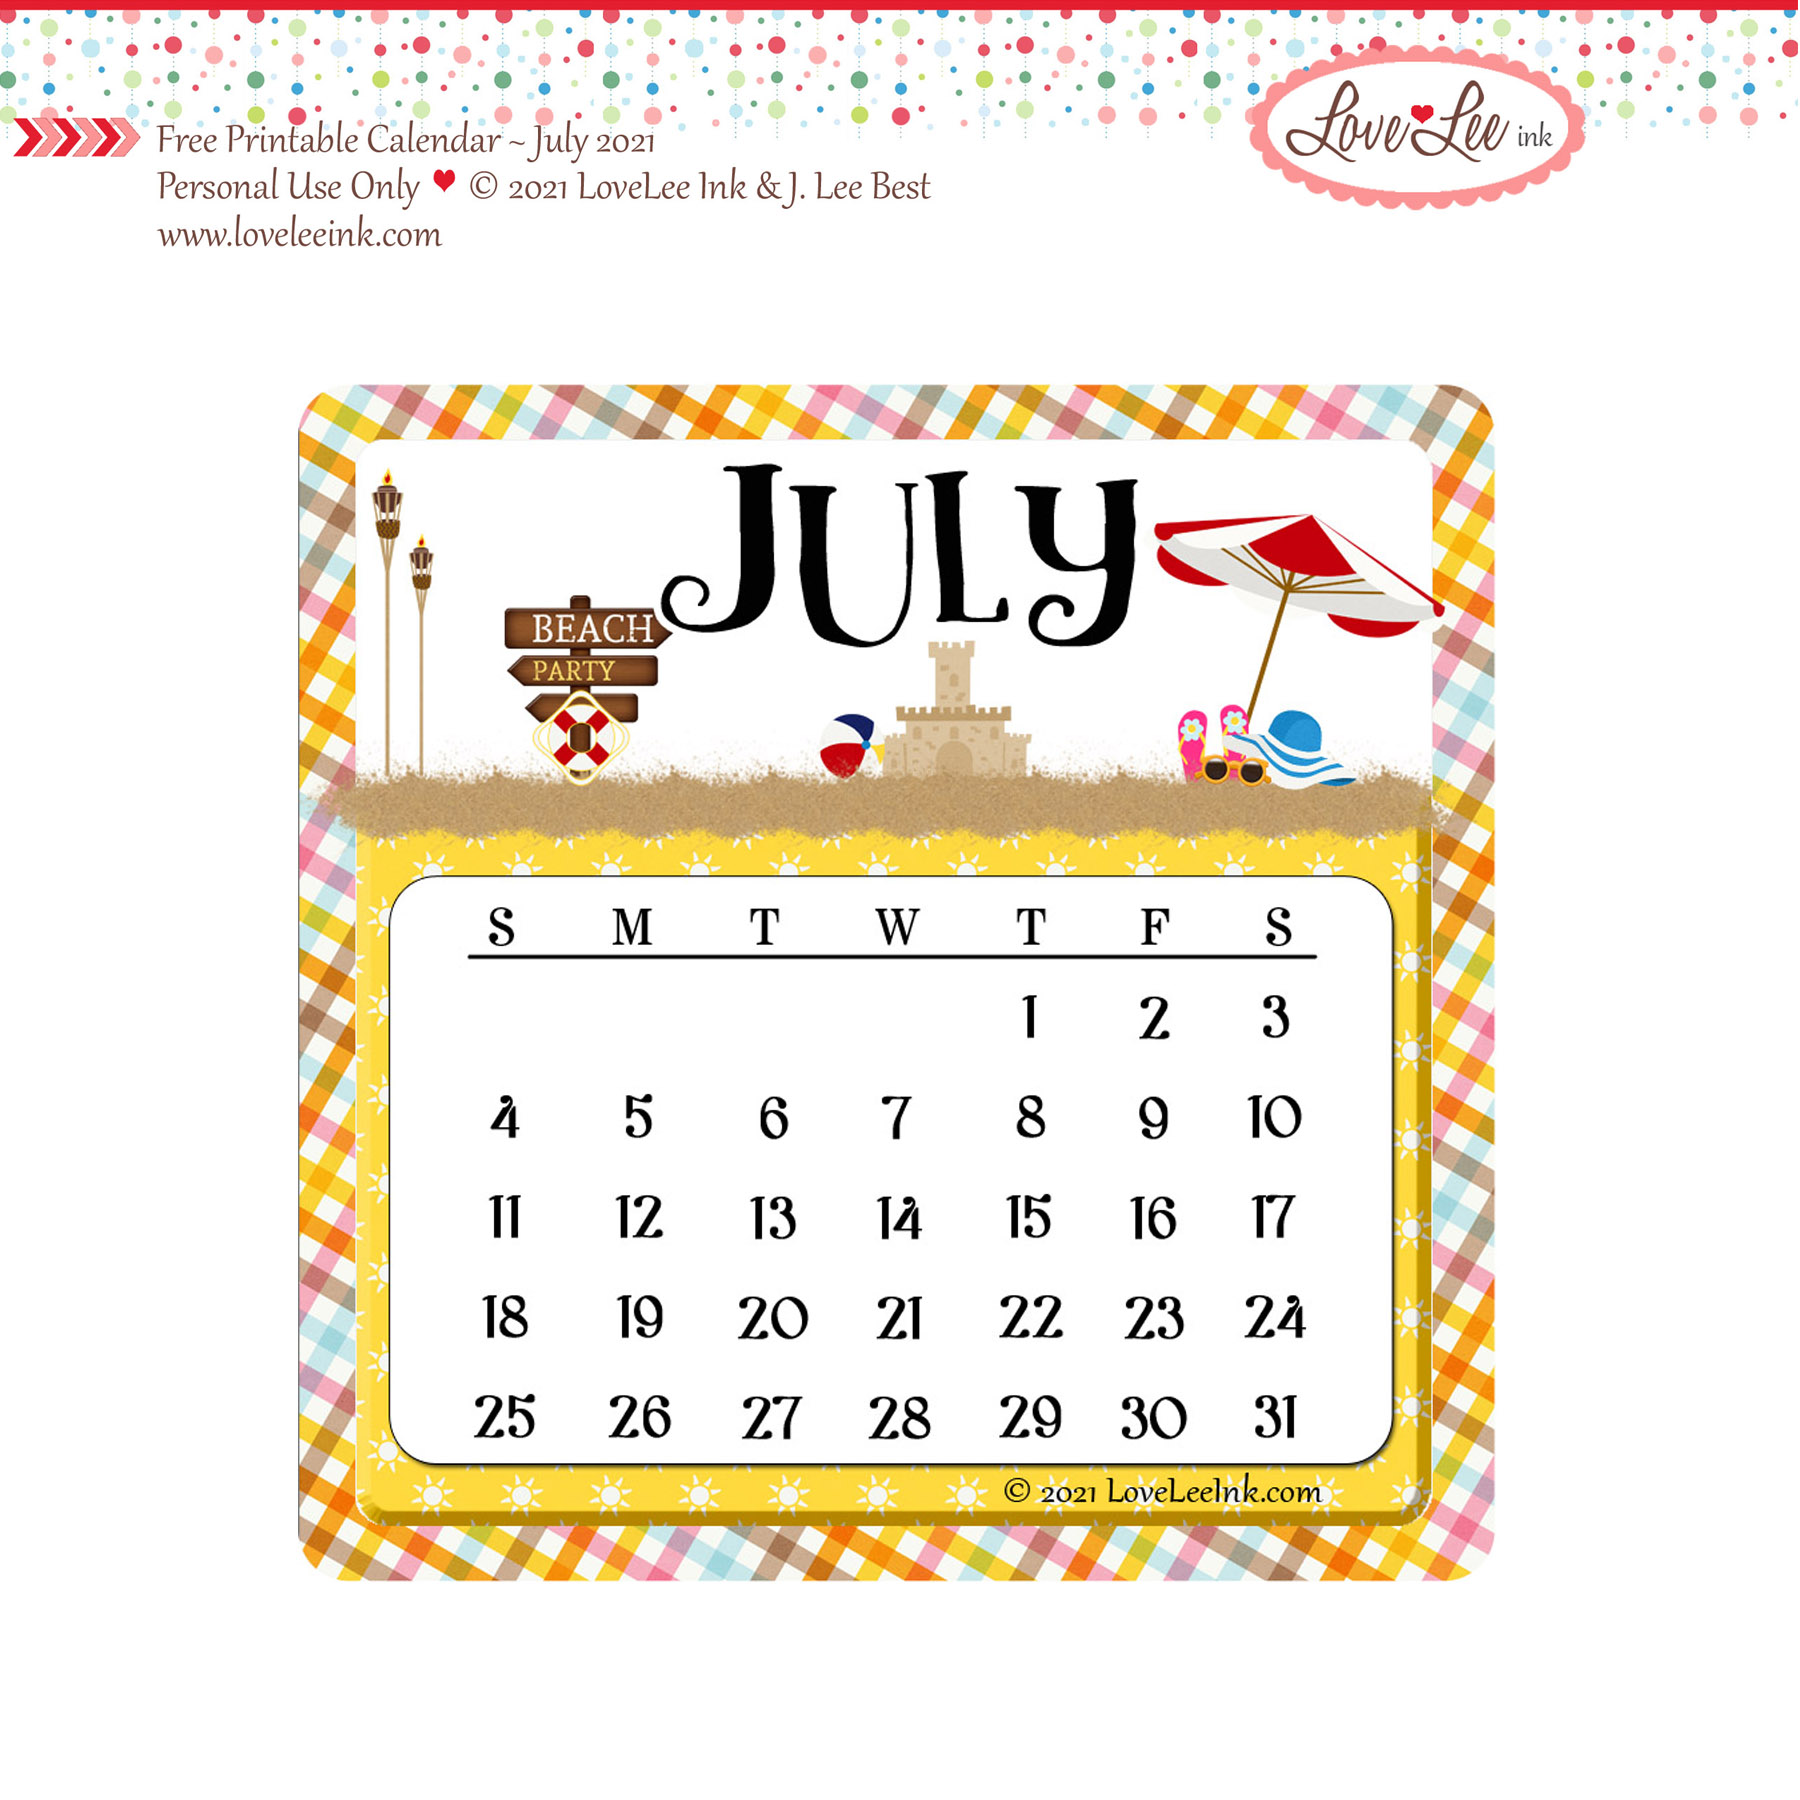 Free Printable Calendar July 2021 LoveLee Ink